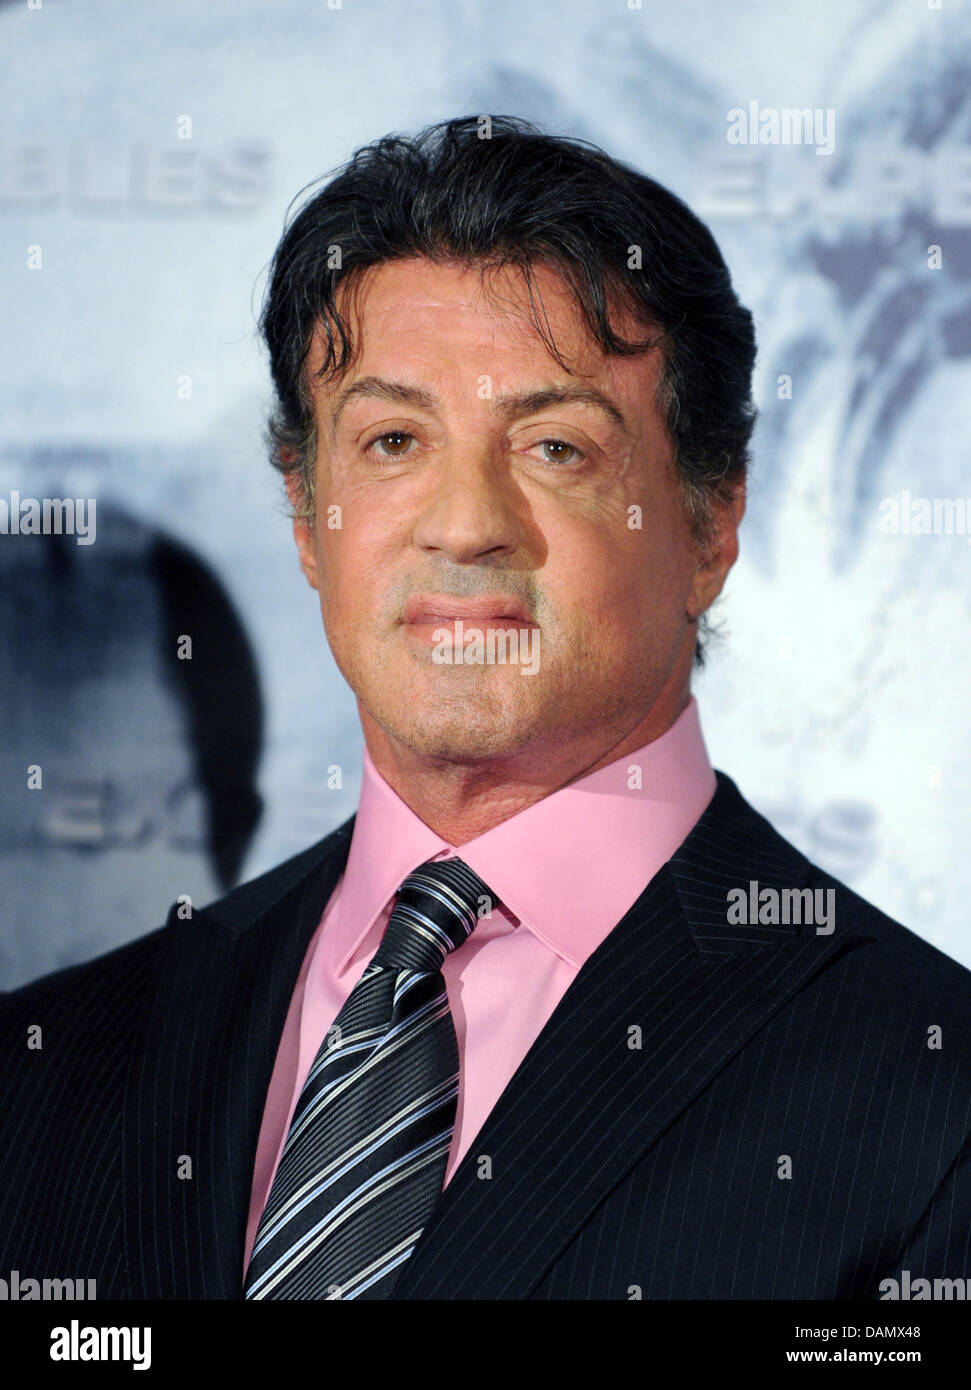 (Dpa Datei) - eine Archiv Bild, datiert 6. August 2010, zeigt uns Hollywood-Schauspieler Sylvester Stallone in Berlin, Deutschland.  Stallone, wer am 6. Juli 2011 65 Jahre alt wird, ist offenbar bereits seine nächste Aktion Rolle vorzubereiten.  Foto: Soeren Stache) Stockfoto